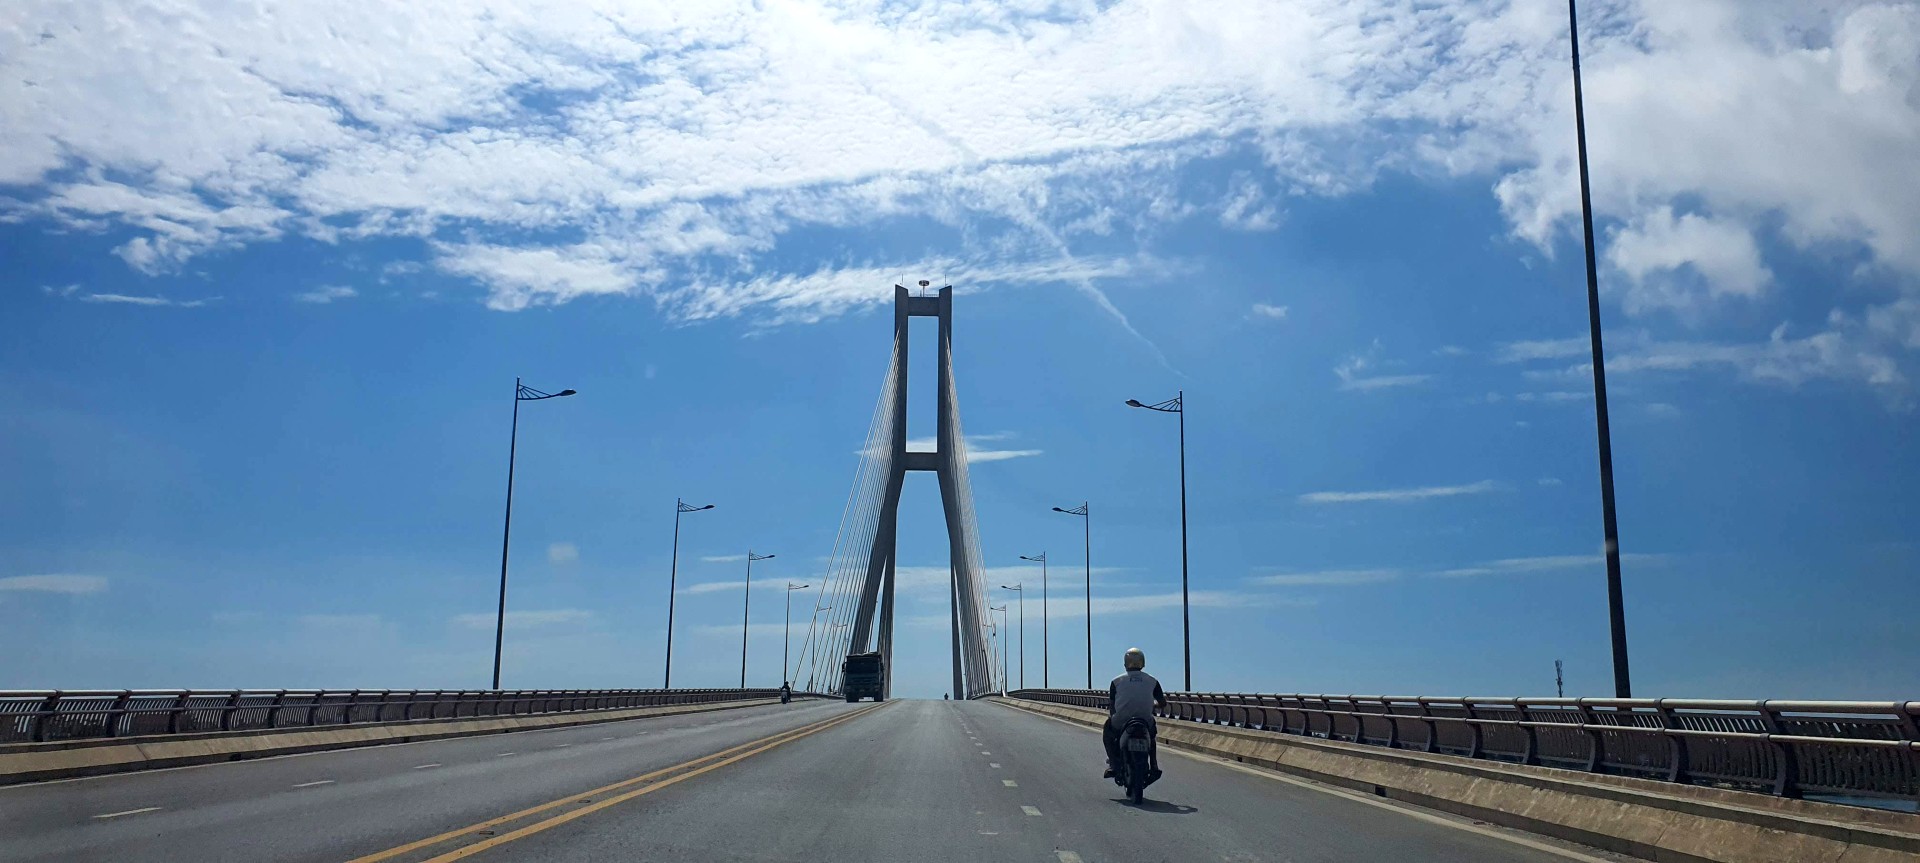 Cầu Nhật Lệ 2 bắc qua sông Nhật Lệ tại TP. Đồng Hới, Quảng Bình.